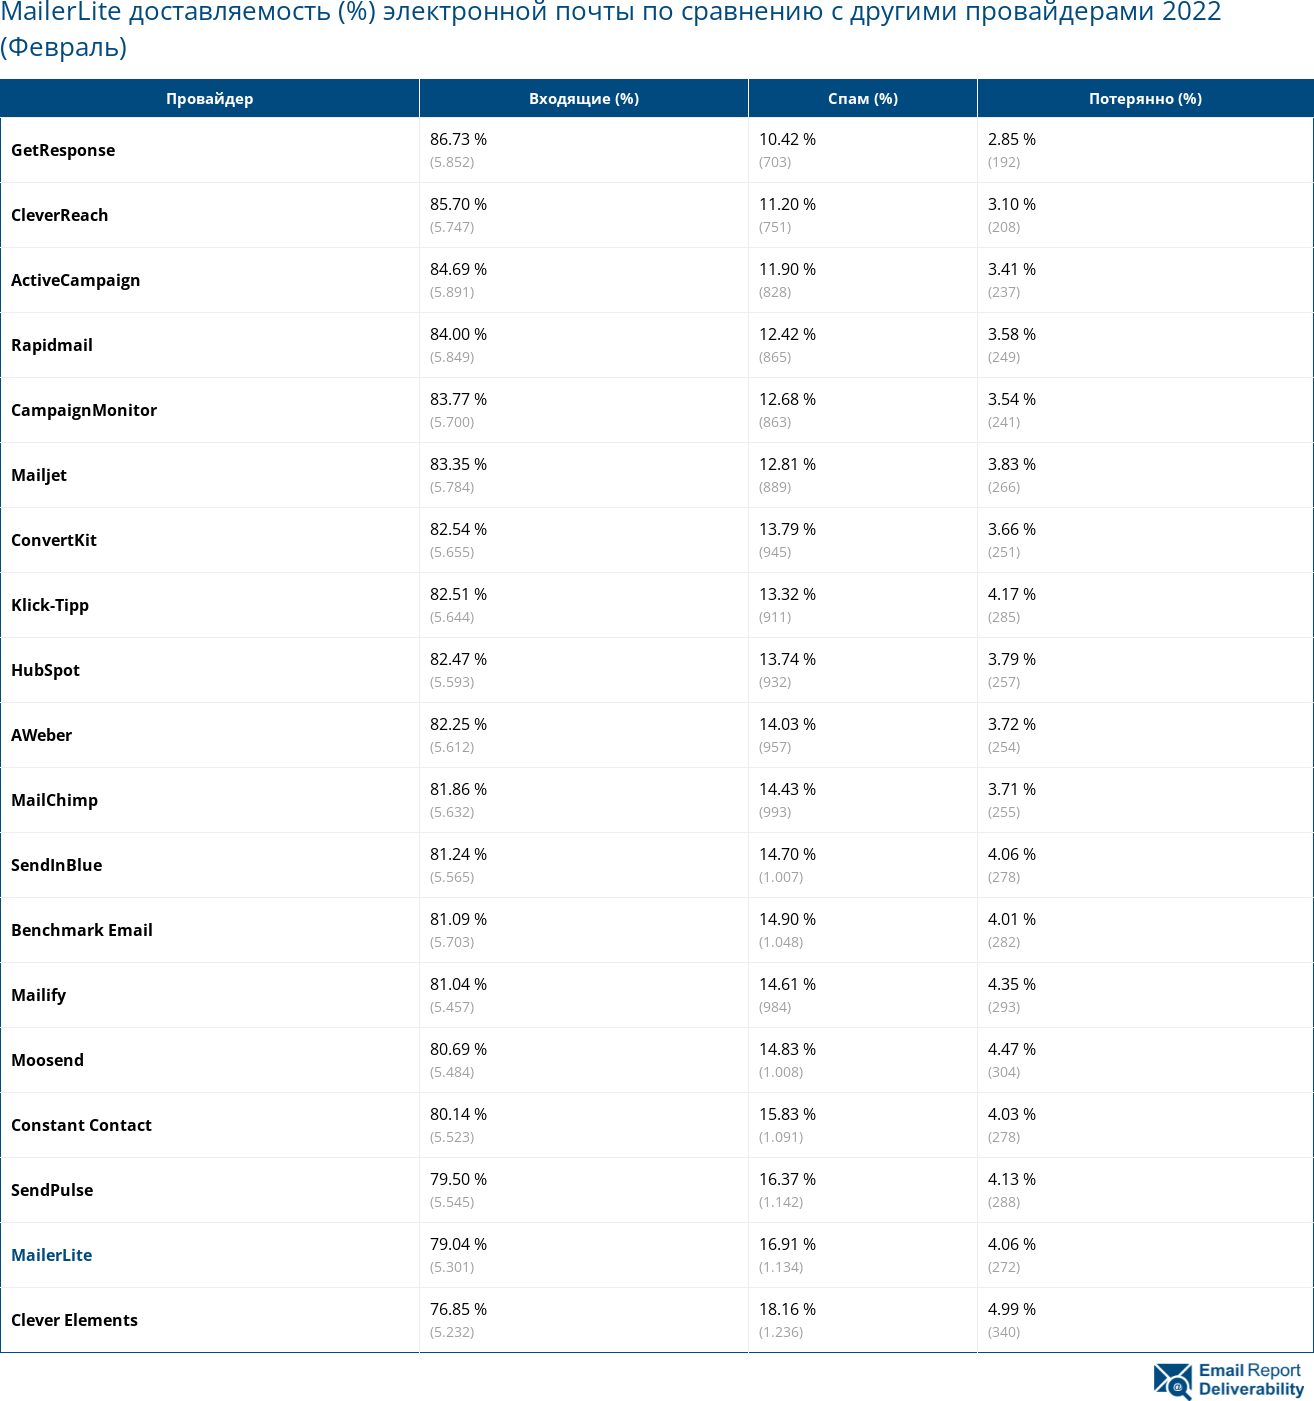 MailerLite доставляемость (%) электронной почты по сравнению с другими провайдерами 2022 (Февраль)